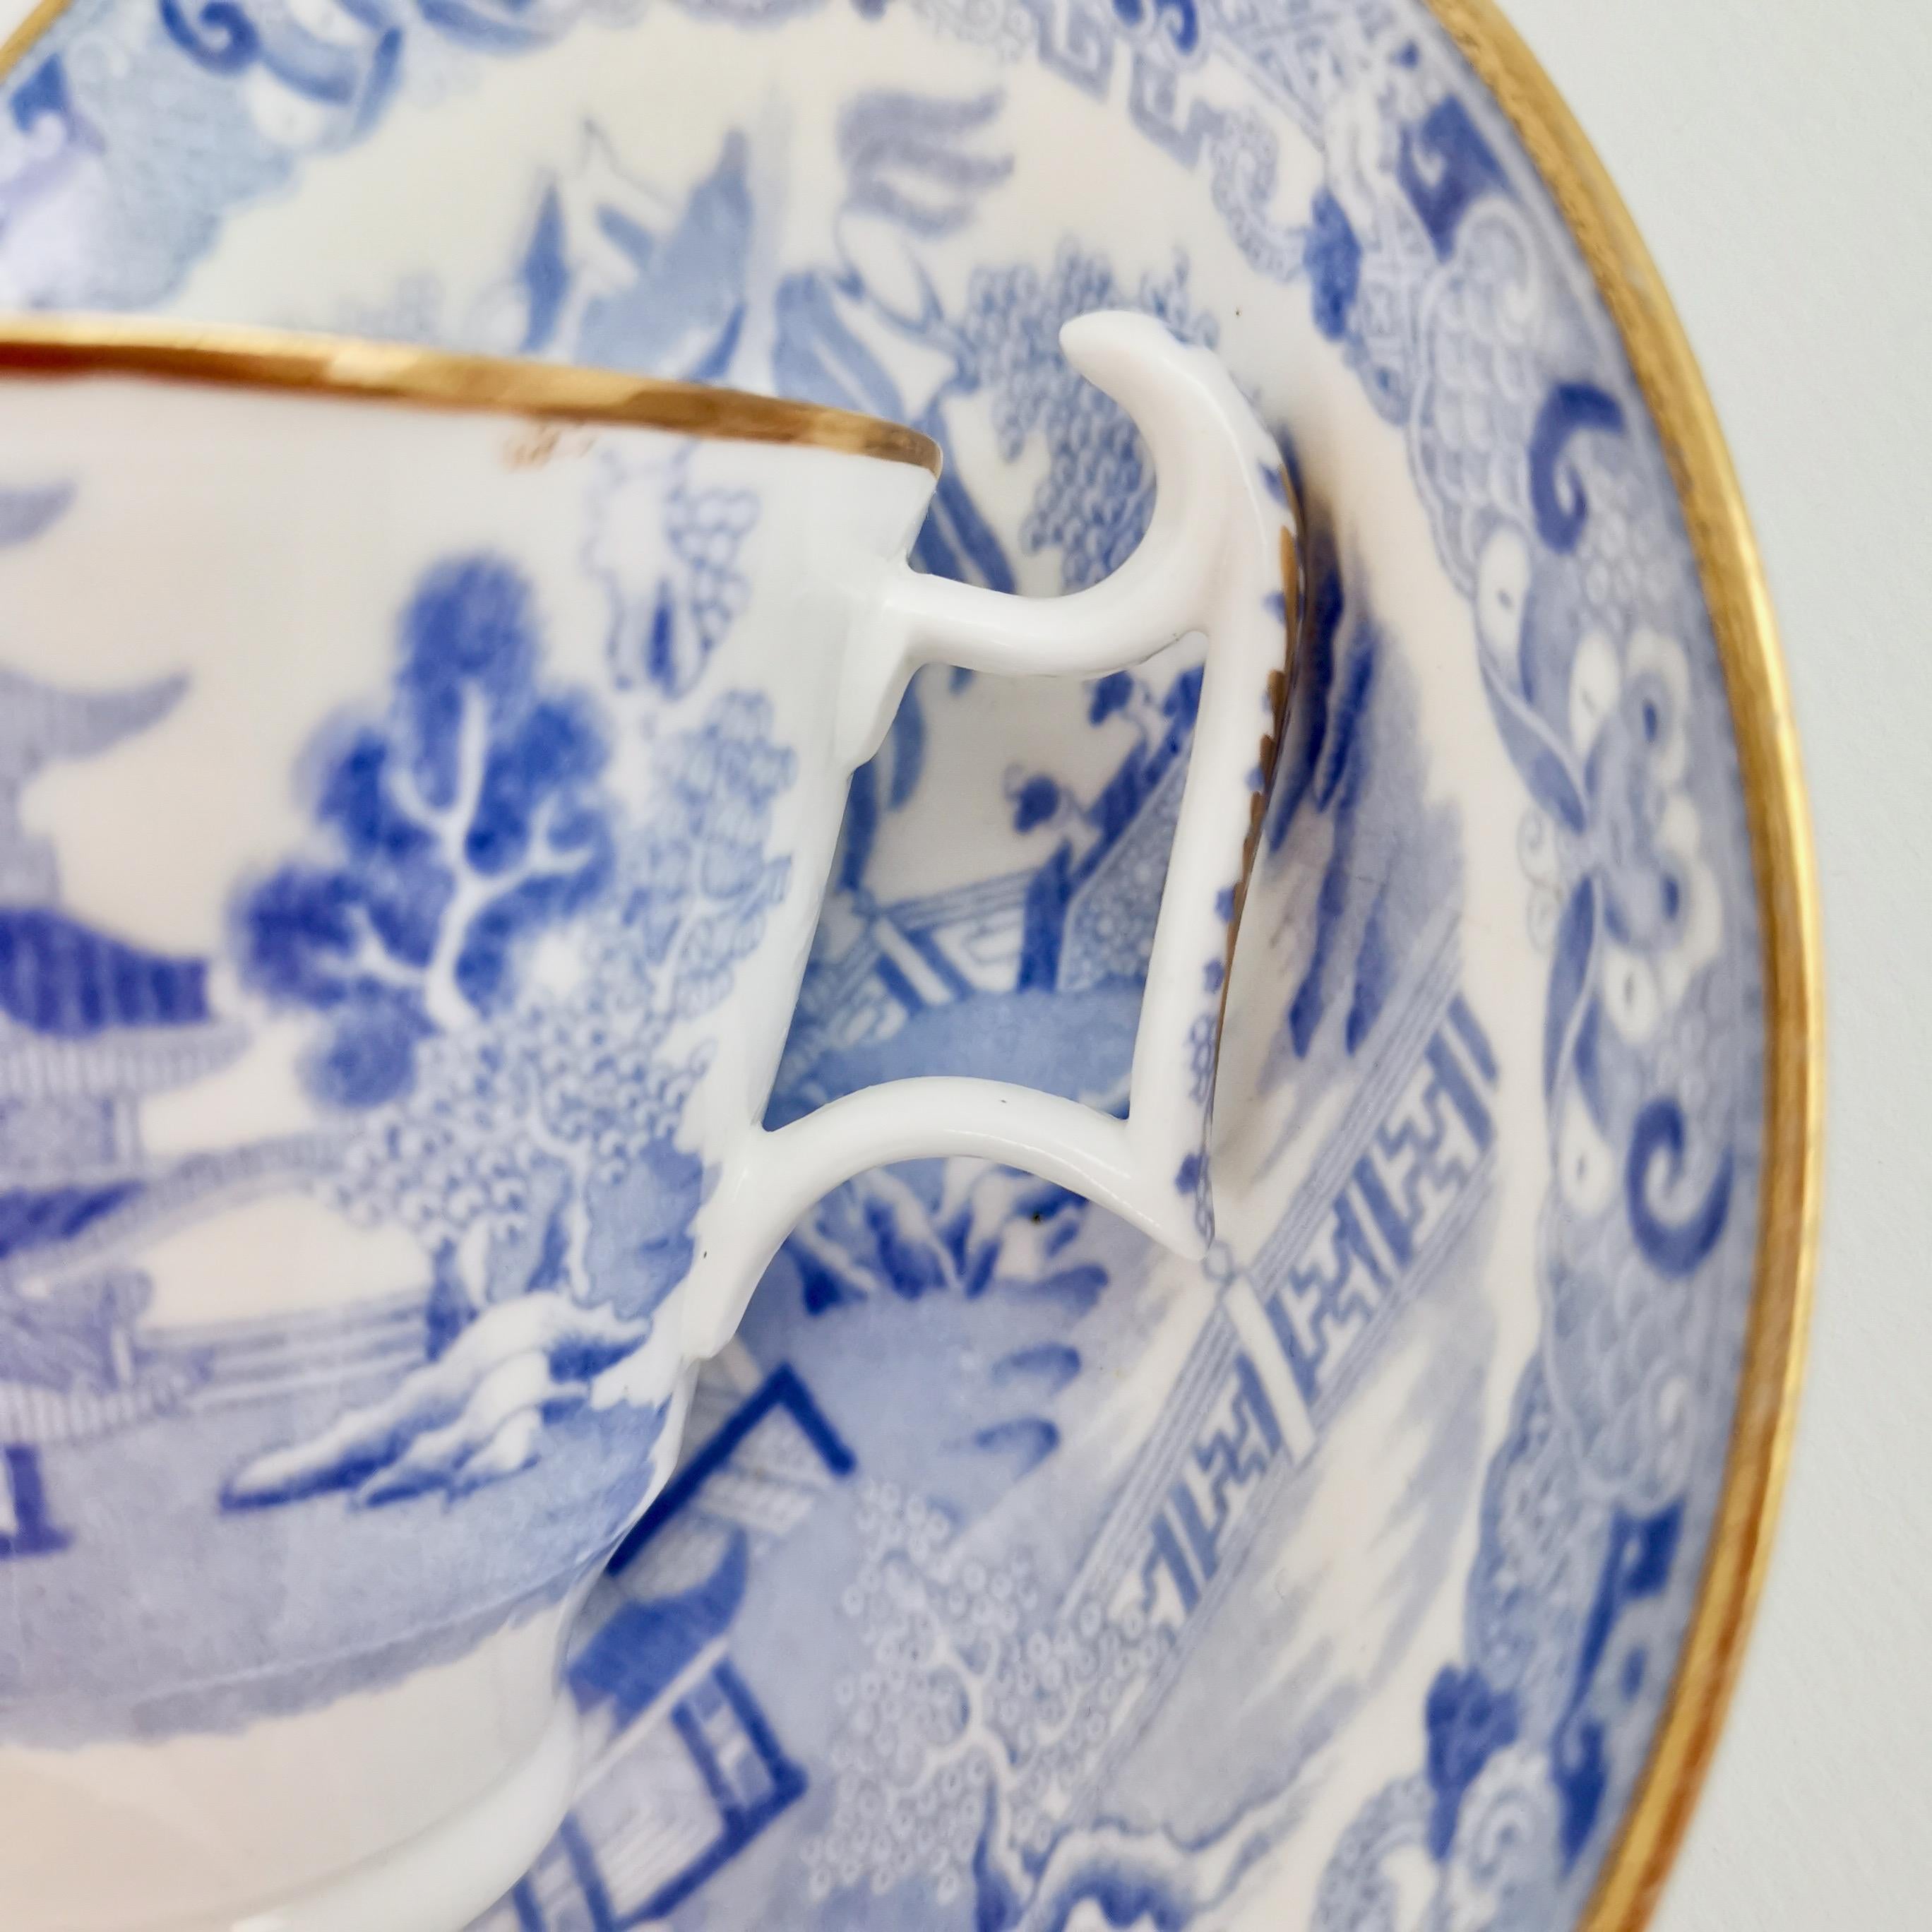 Spode Porcelain Teacup Trio, Brosely Pagoda Blue and White Transfer, ca 1815 6